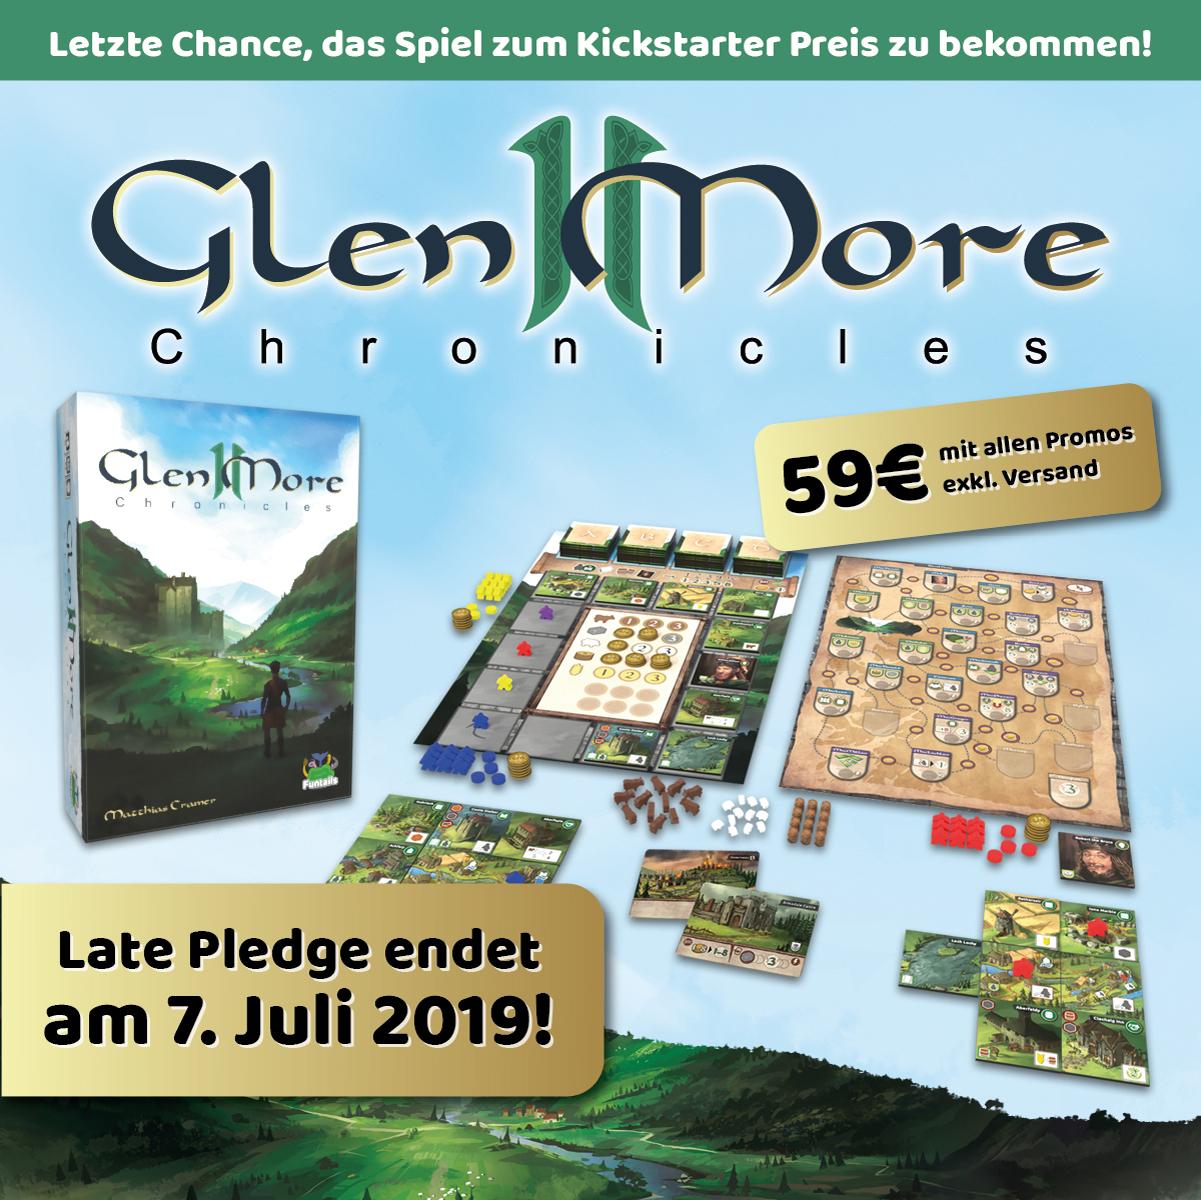 „Glen More II Chronicles“ für 59 Euro mit allen Promos